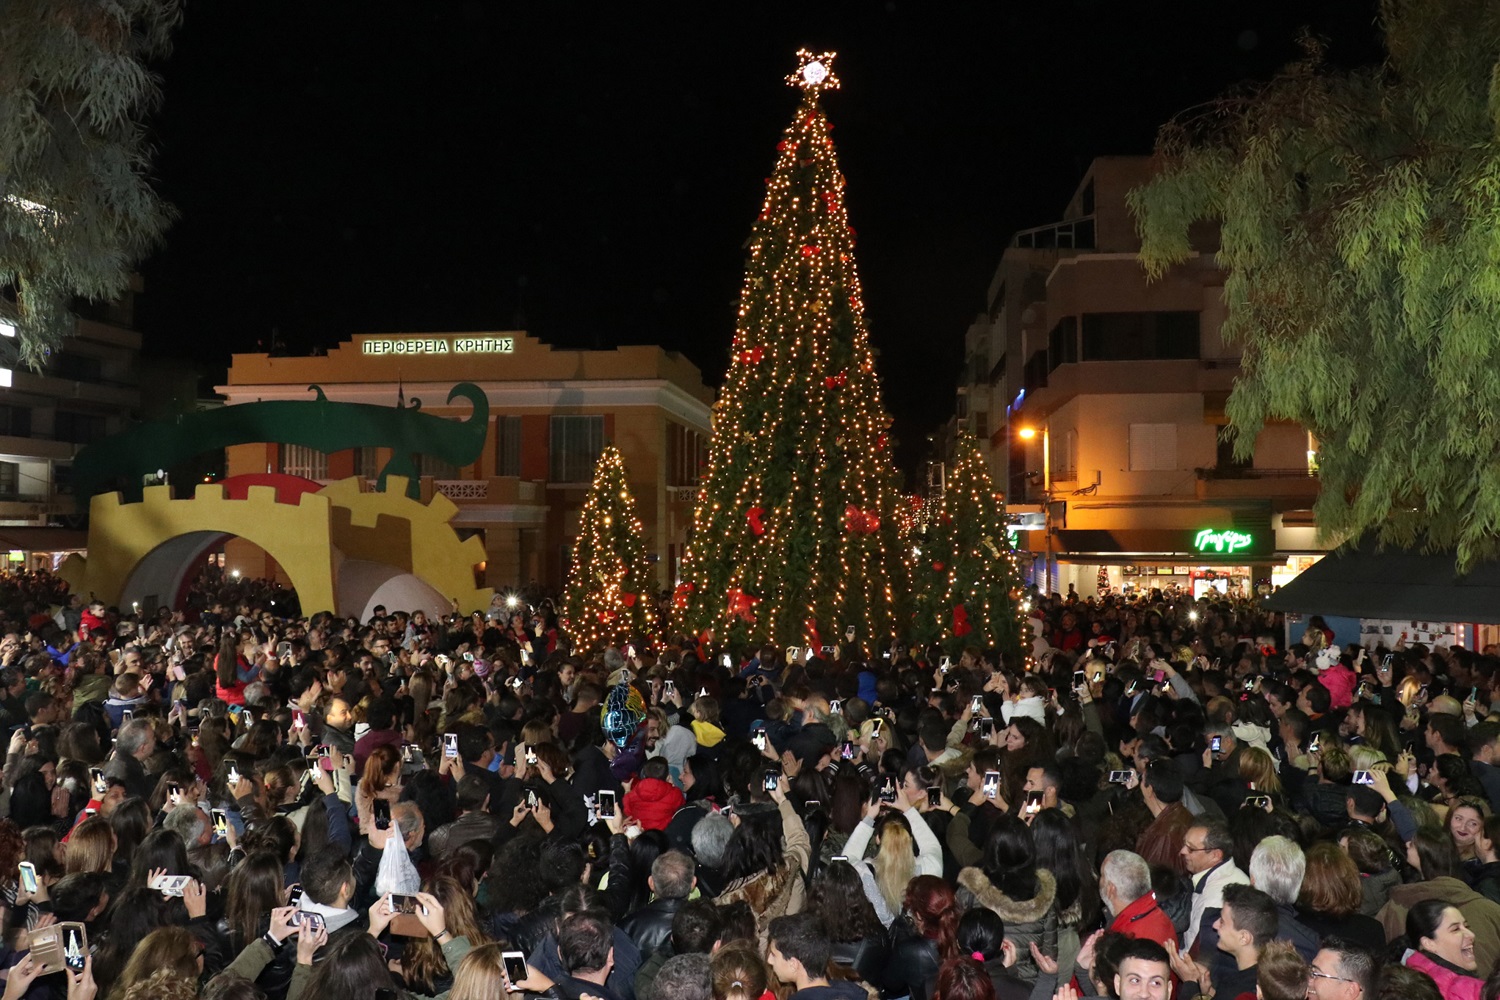 Οι Χριστουγεννιάτικες εκδηλώσεις στο Ηράκλειο την Τετάρτη 6 Δεκεμβρίου